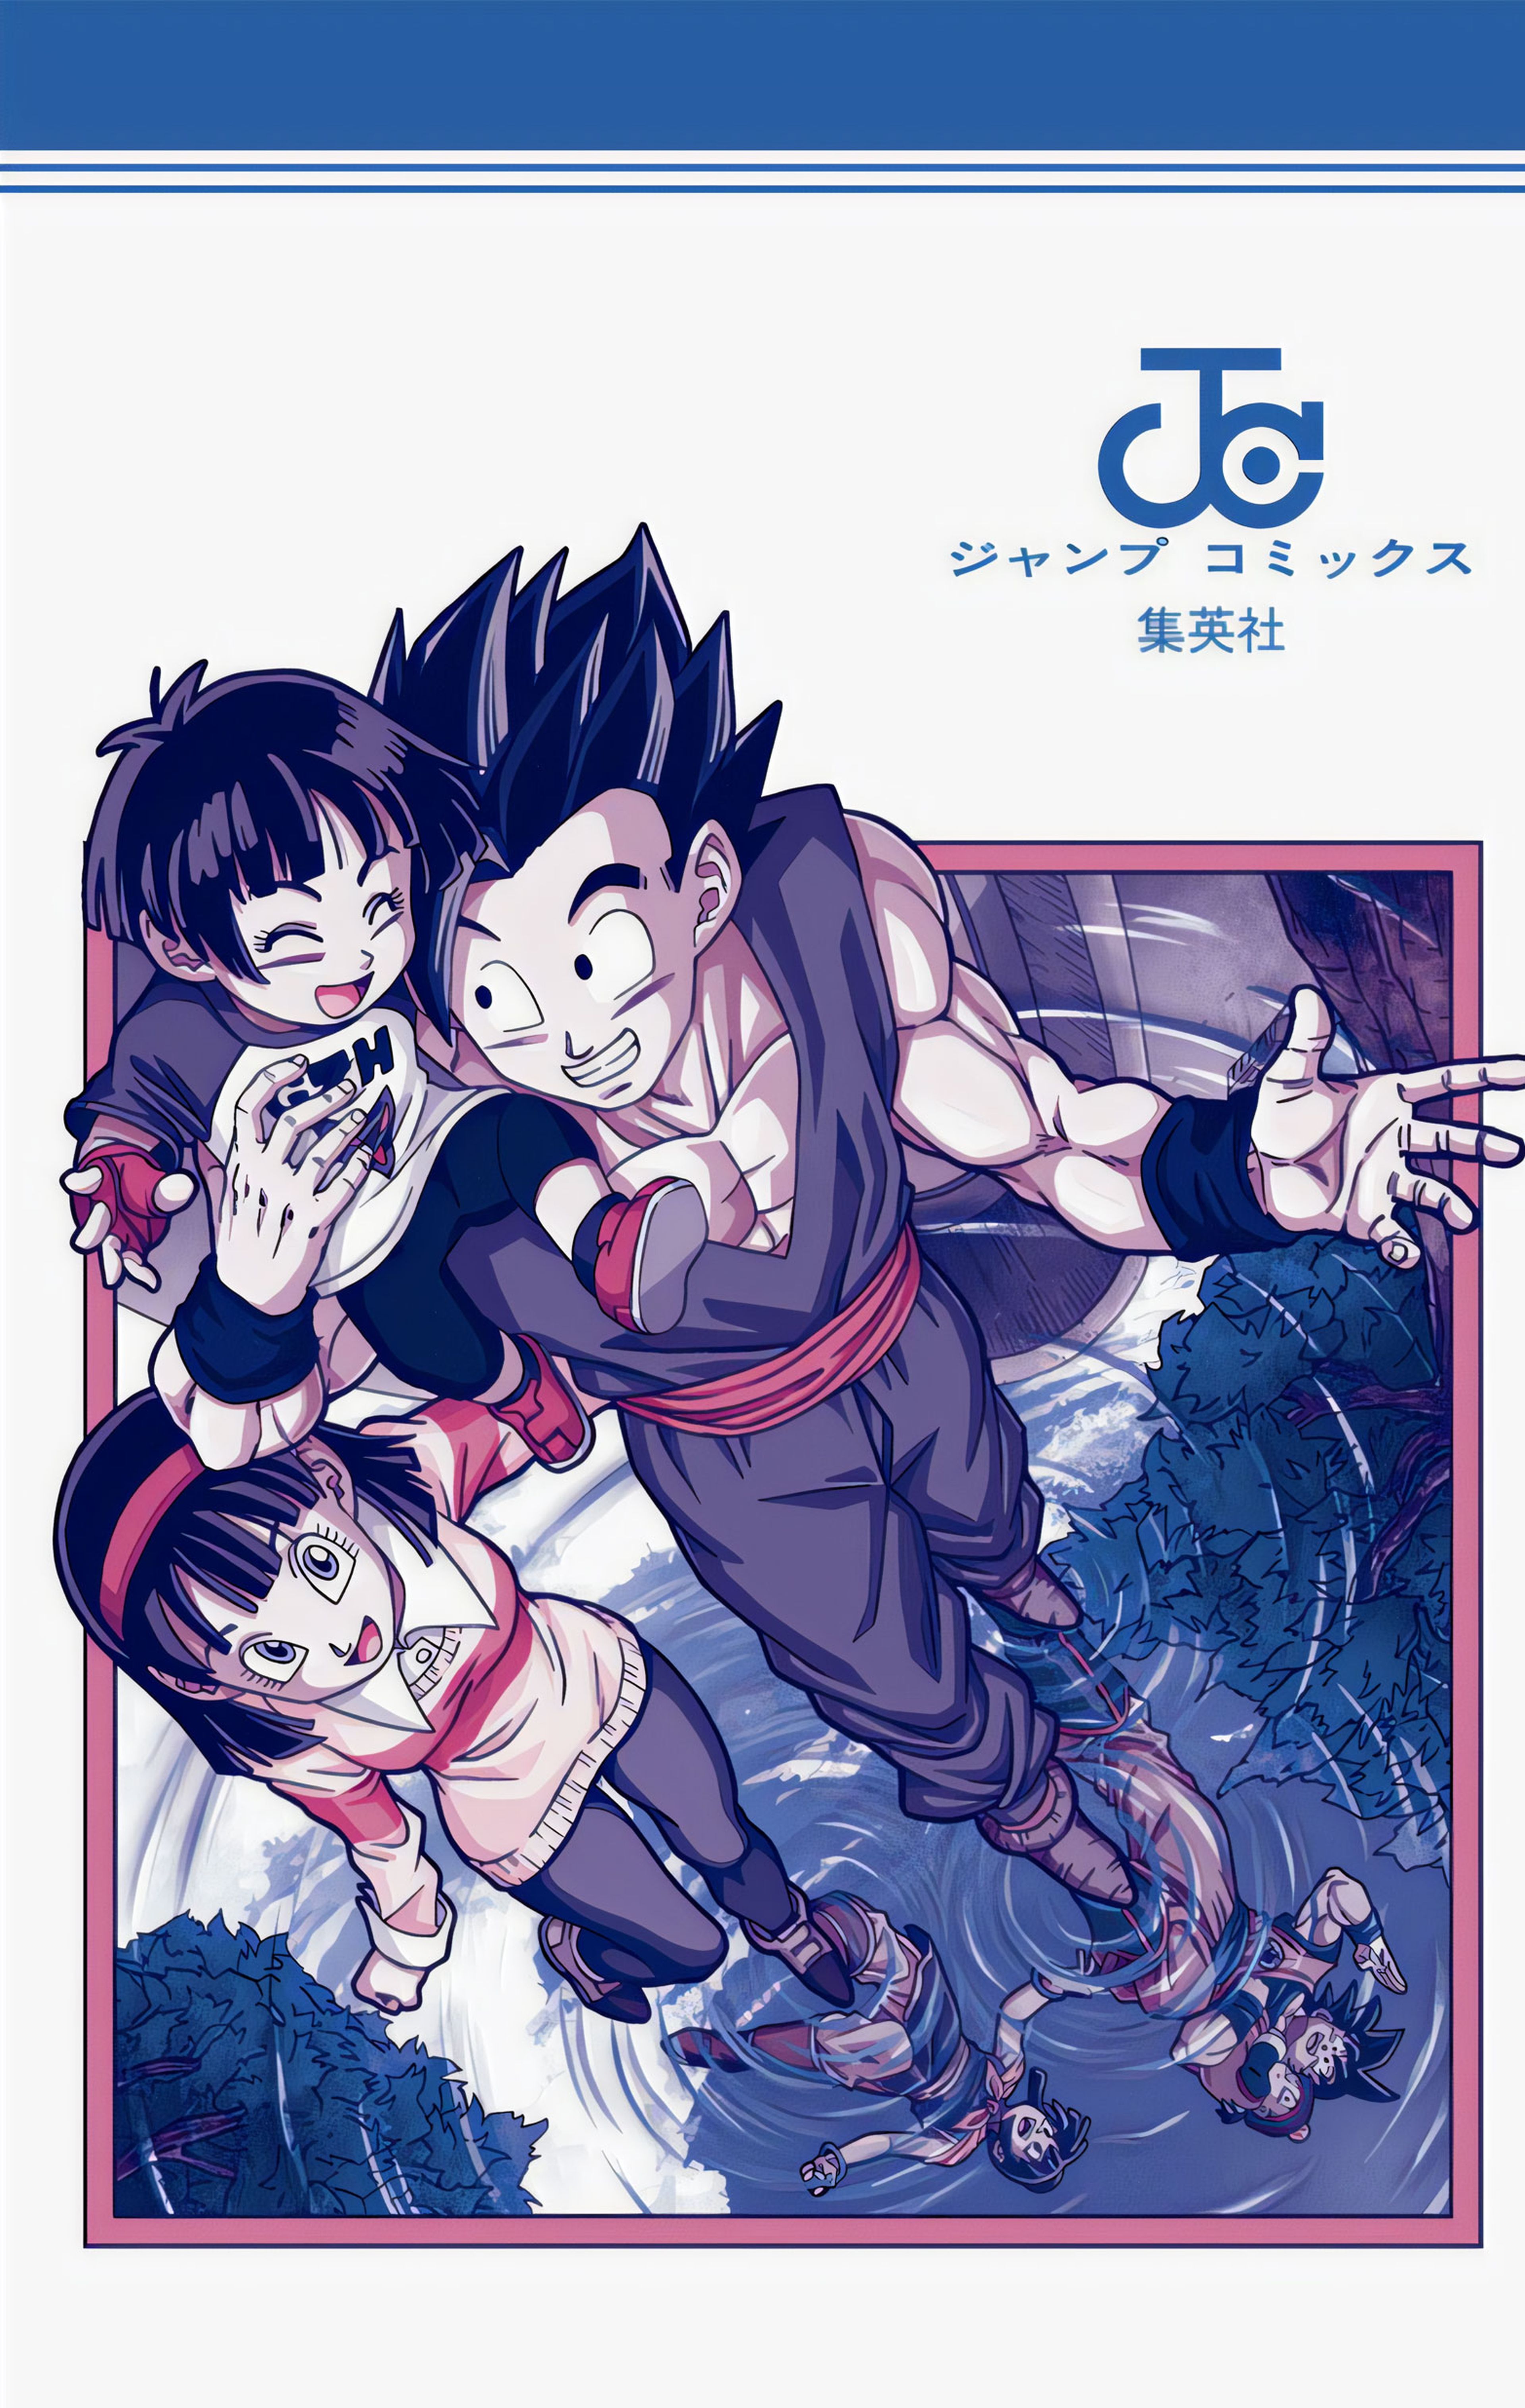 Dragon Ball Super: Super Hero - La nueva Pan de la película ya aparece en el manga de Dragon Ball Super de Akira Toriyama y Toyotaro